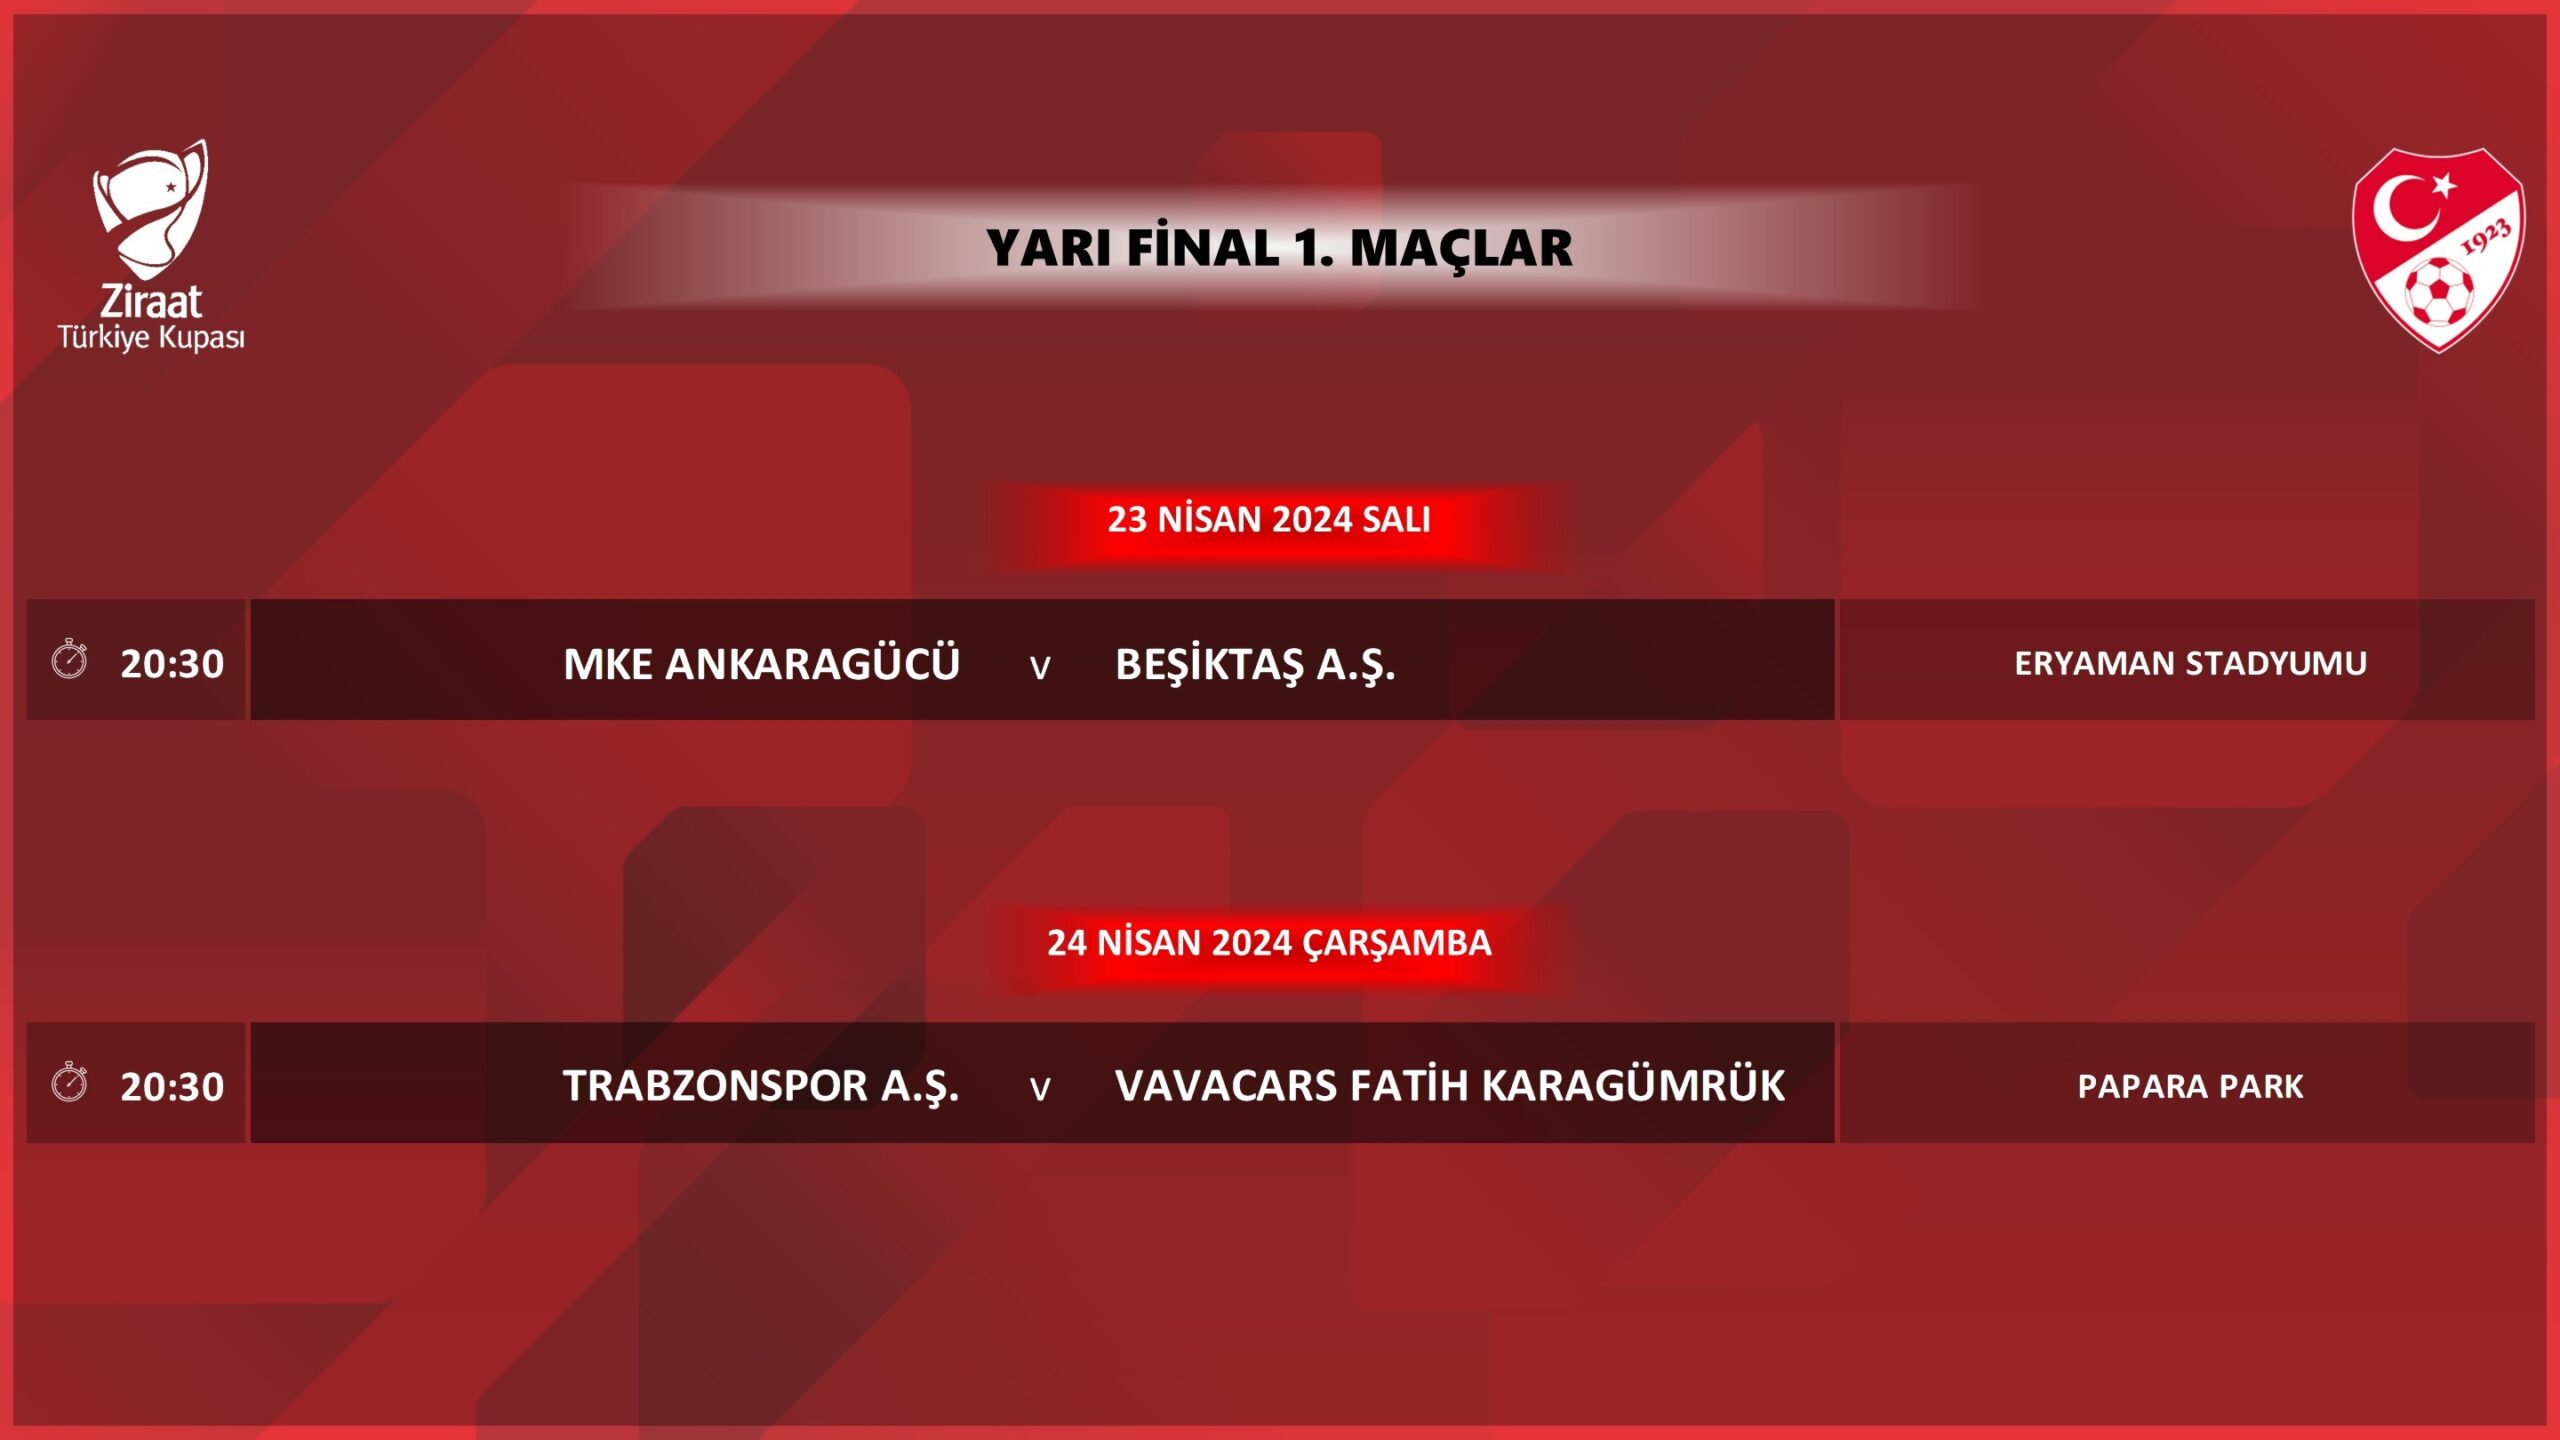  Ziraat Türkiye Kupası yarı final ilk maçlarının programı belli oldu